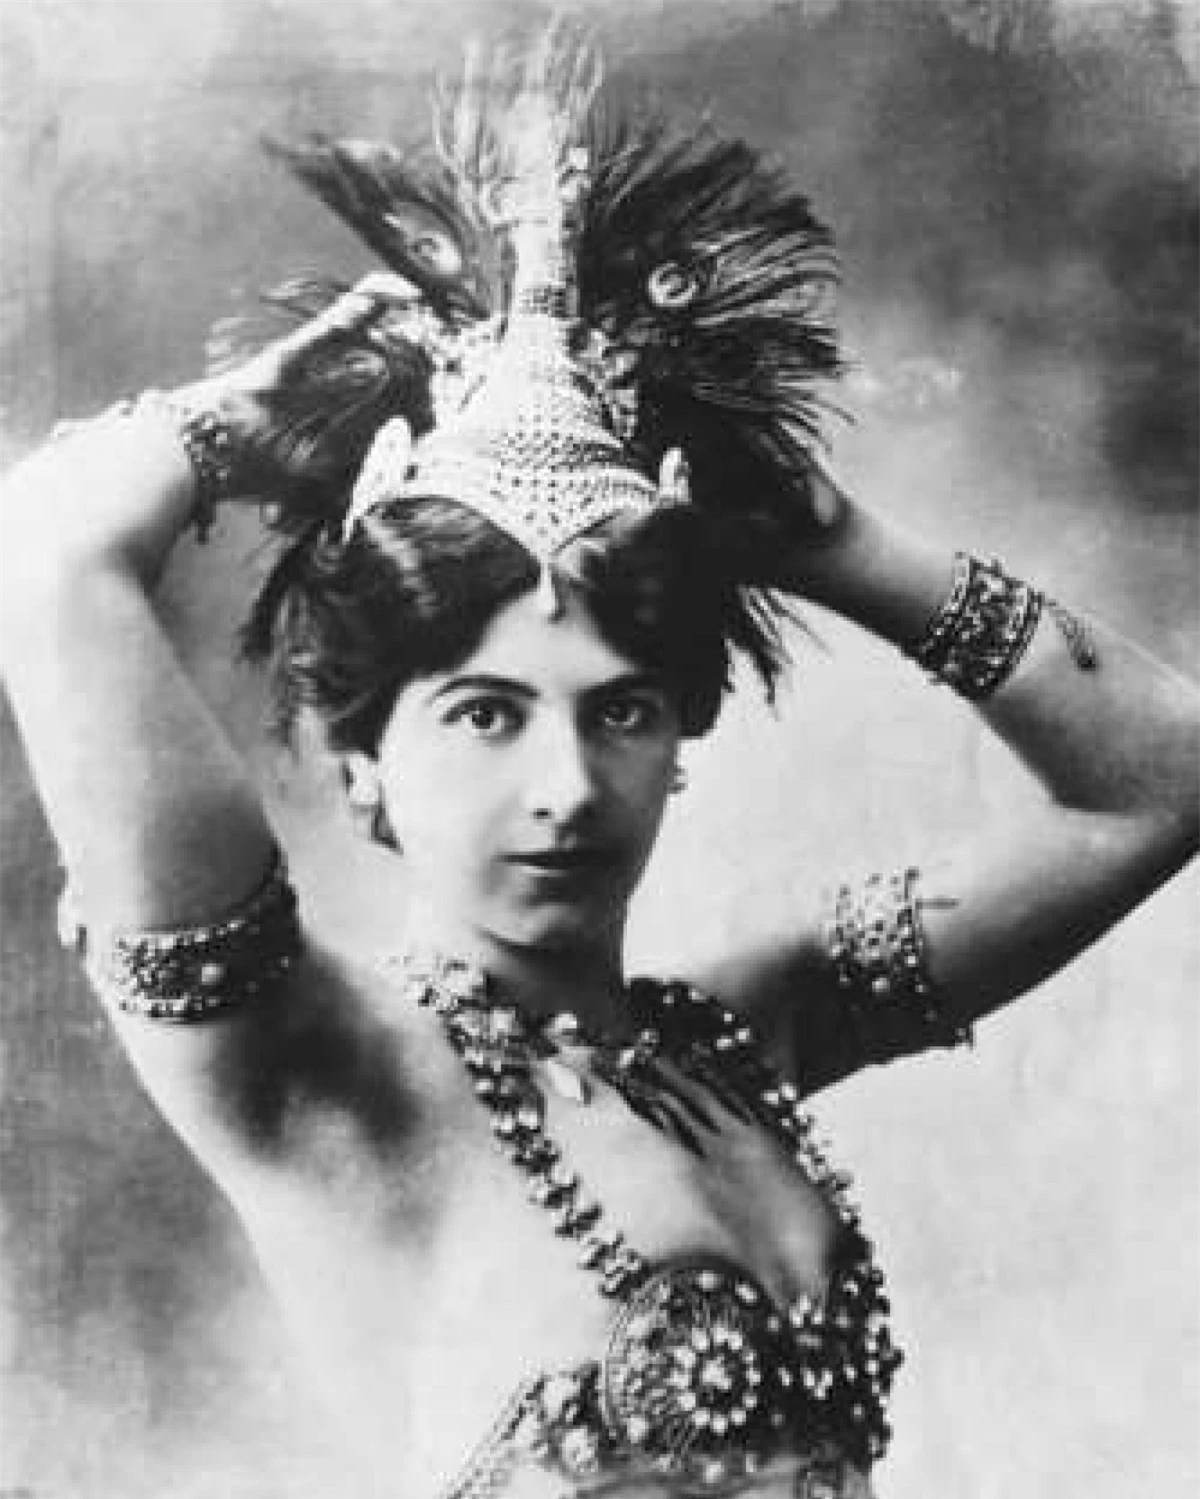 Mata Hari (1876–1917): Mata Hari, sinh ra tại thị trấn Leyvarden ở Hà Lan, là một vũ nữ nổi tiếng khắp Paris hoa lệ với những điệu nhảy tốn nhiều giấy mực của các nhà phê bình nghệ thuật. Trong suốt Thế chiến I, Mata Hari được cho là có nhiệm vụ thu thập tin tức có liên quan đến hoạt động quân sự của Pháp ở Paris và các khu vực chiến lược quan trọng rồi thông báo cho cơ quan tình báo Đức. Năm 1917, cô bị Pháp xử bắn và qua đời ở tuổi 41.